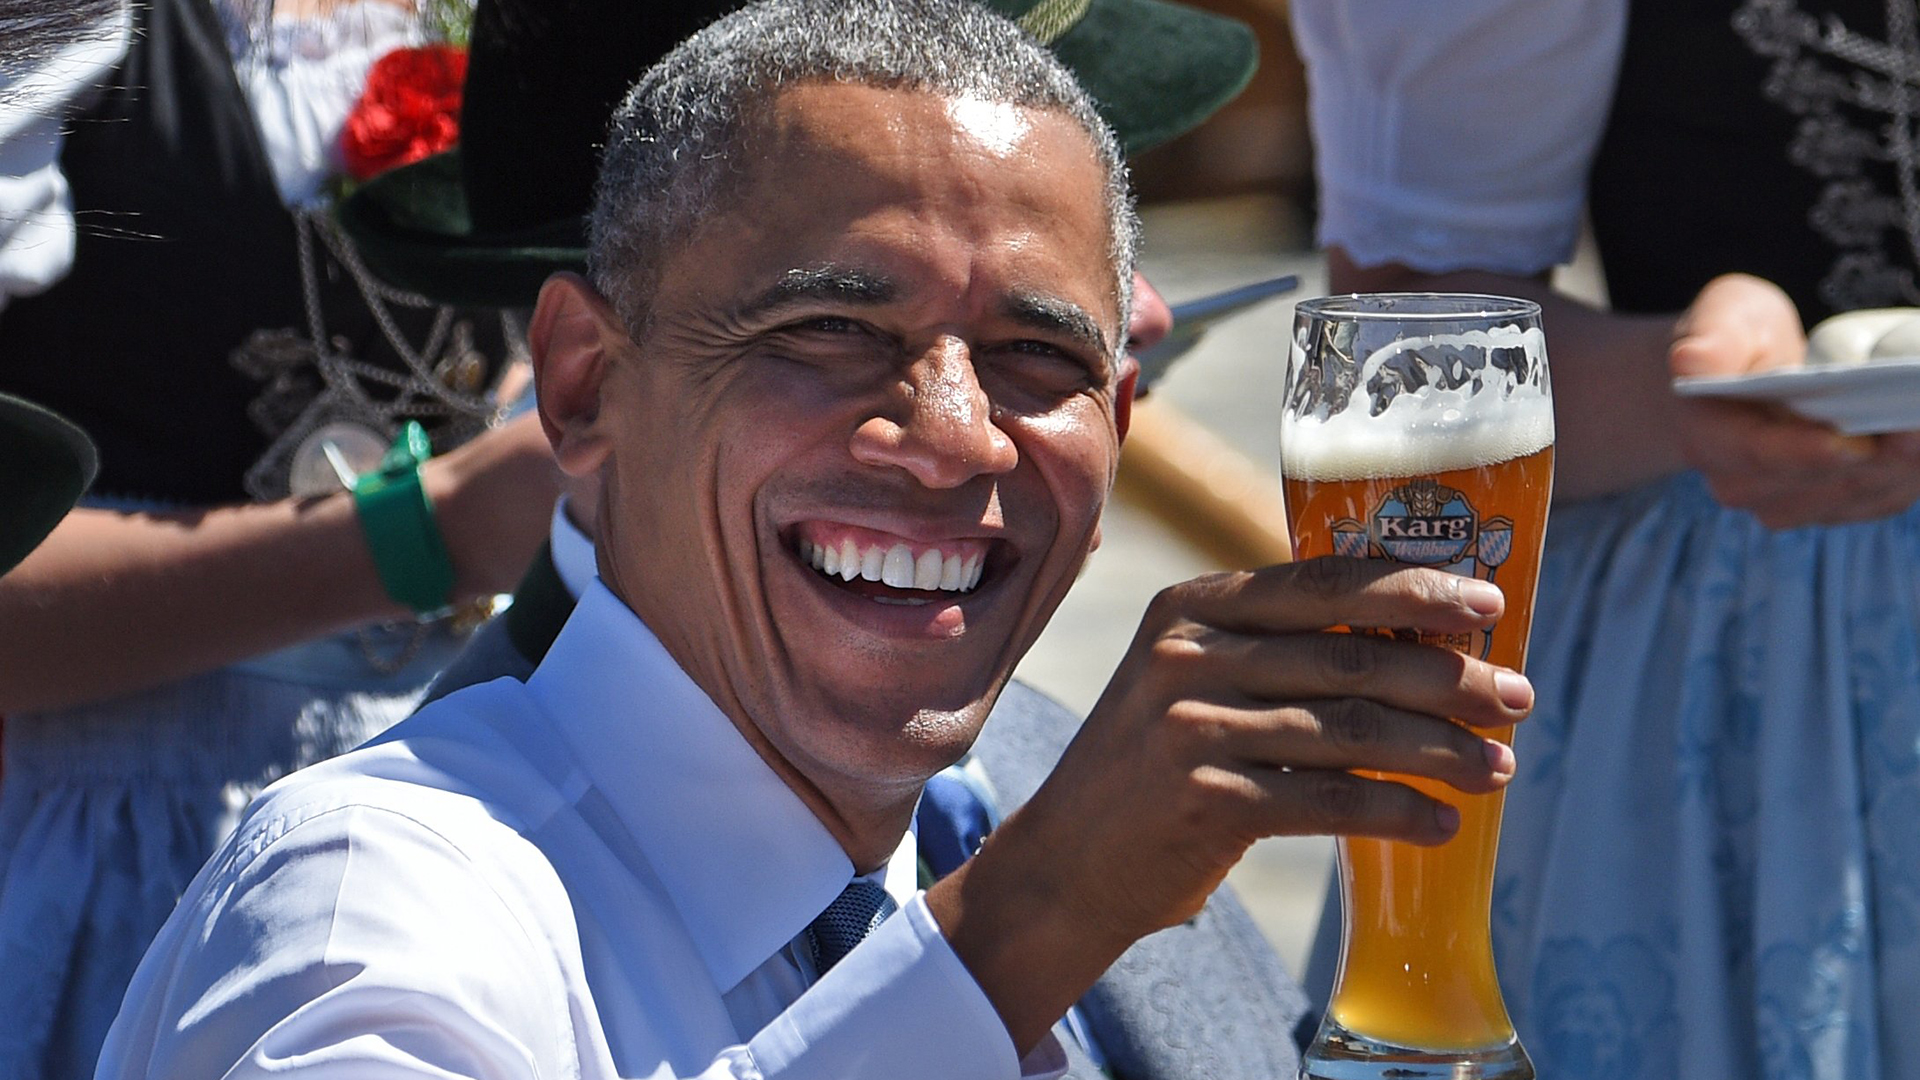 Obama, Merkel Enjoy Beer and Pretzels Ahead of G-7 - NBC News.com